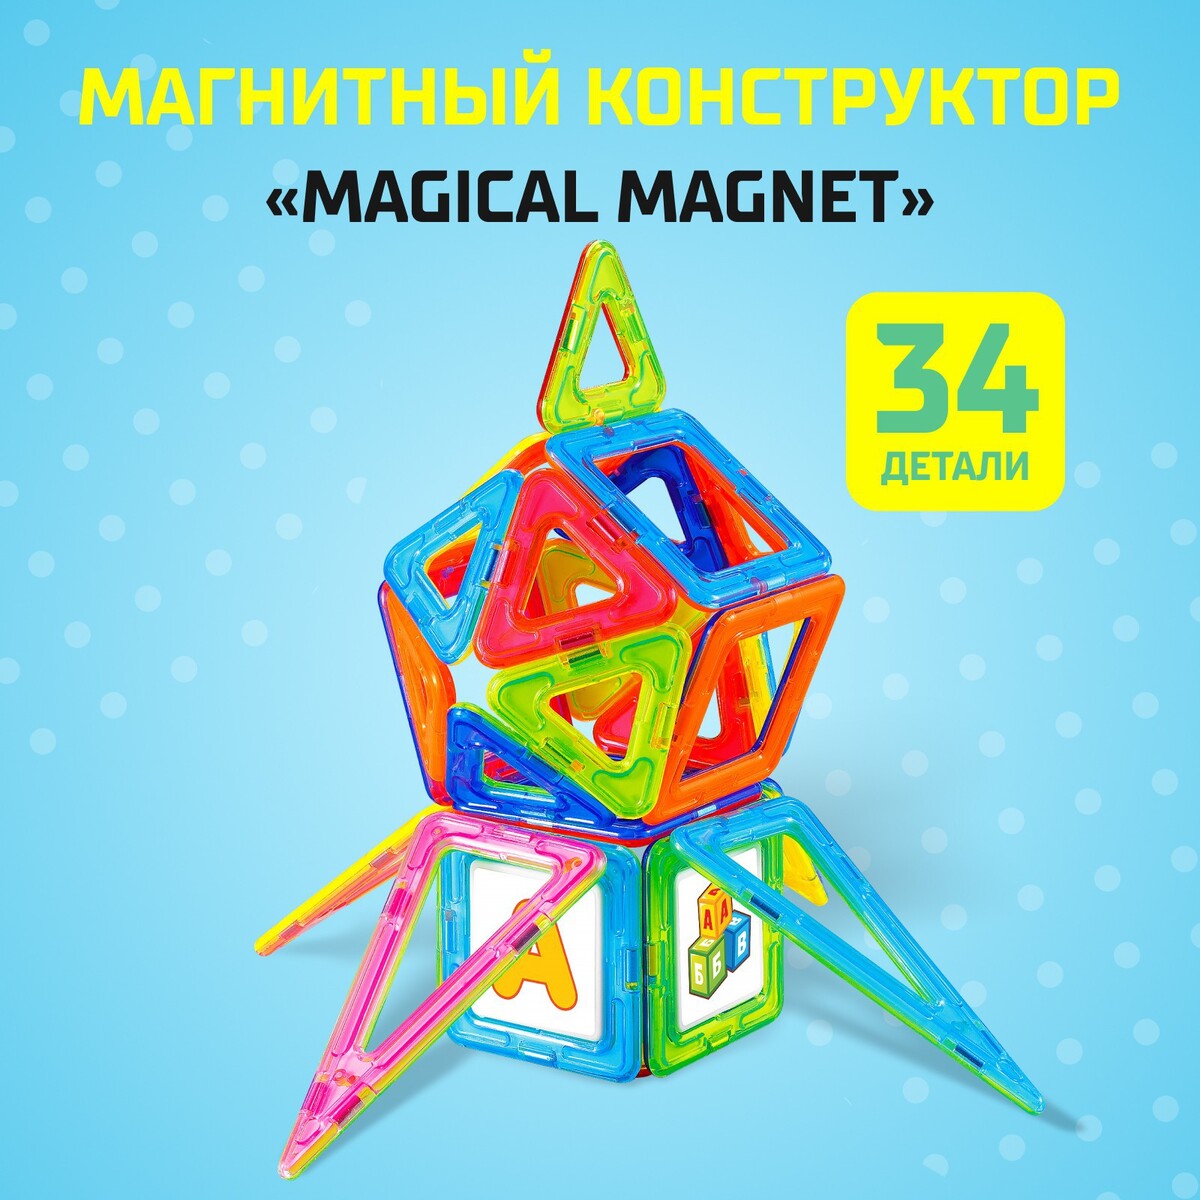 Магнитный конструктор magical magnet, 34 детали, детали матовые мой любимый конструктор bauer classic 104 детали в пакете 614b